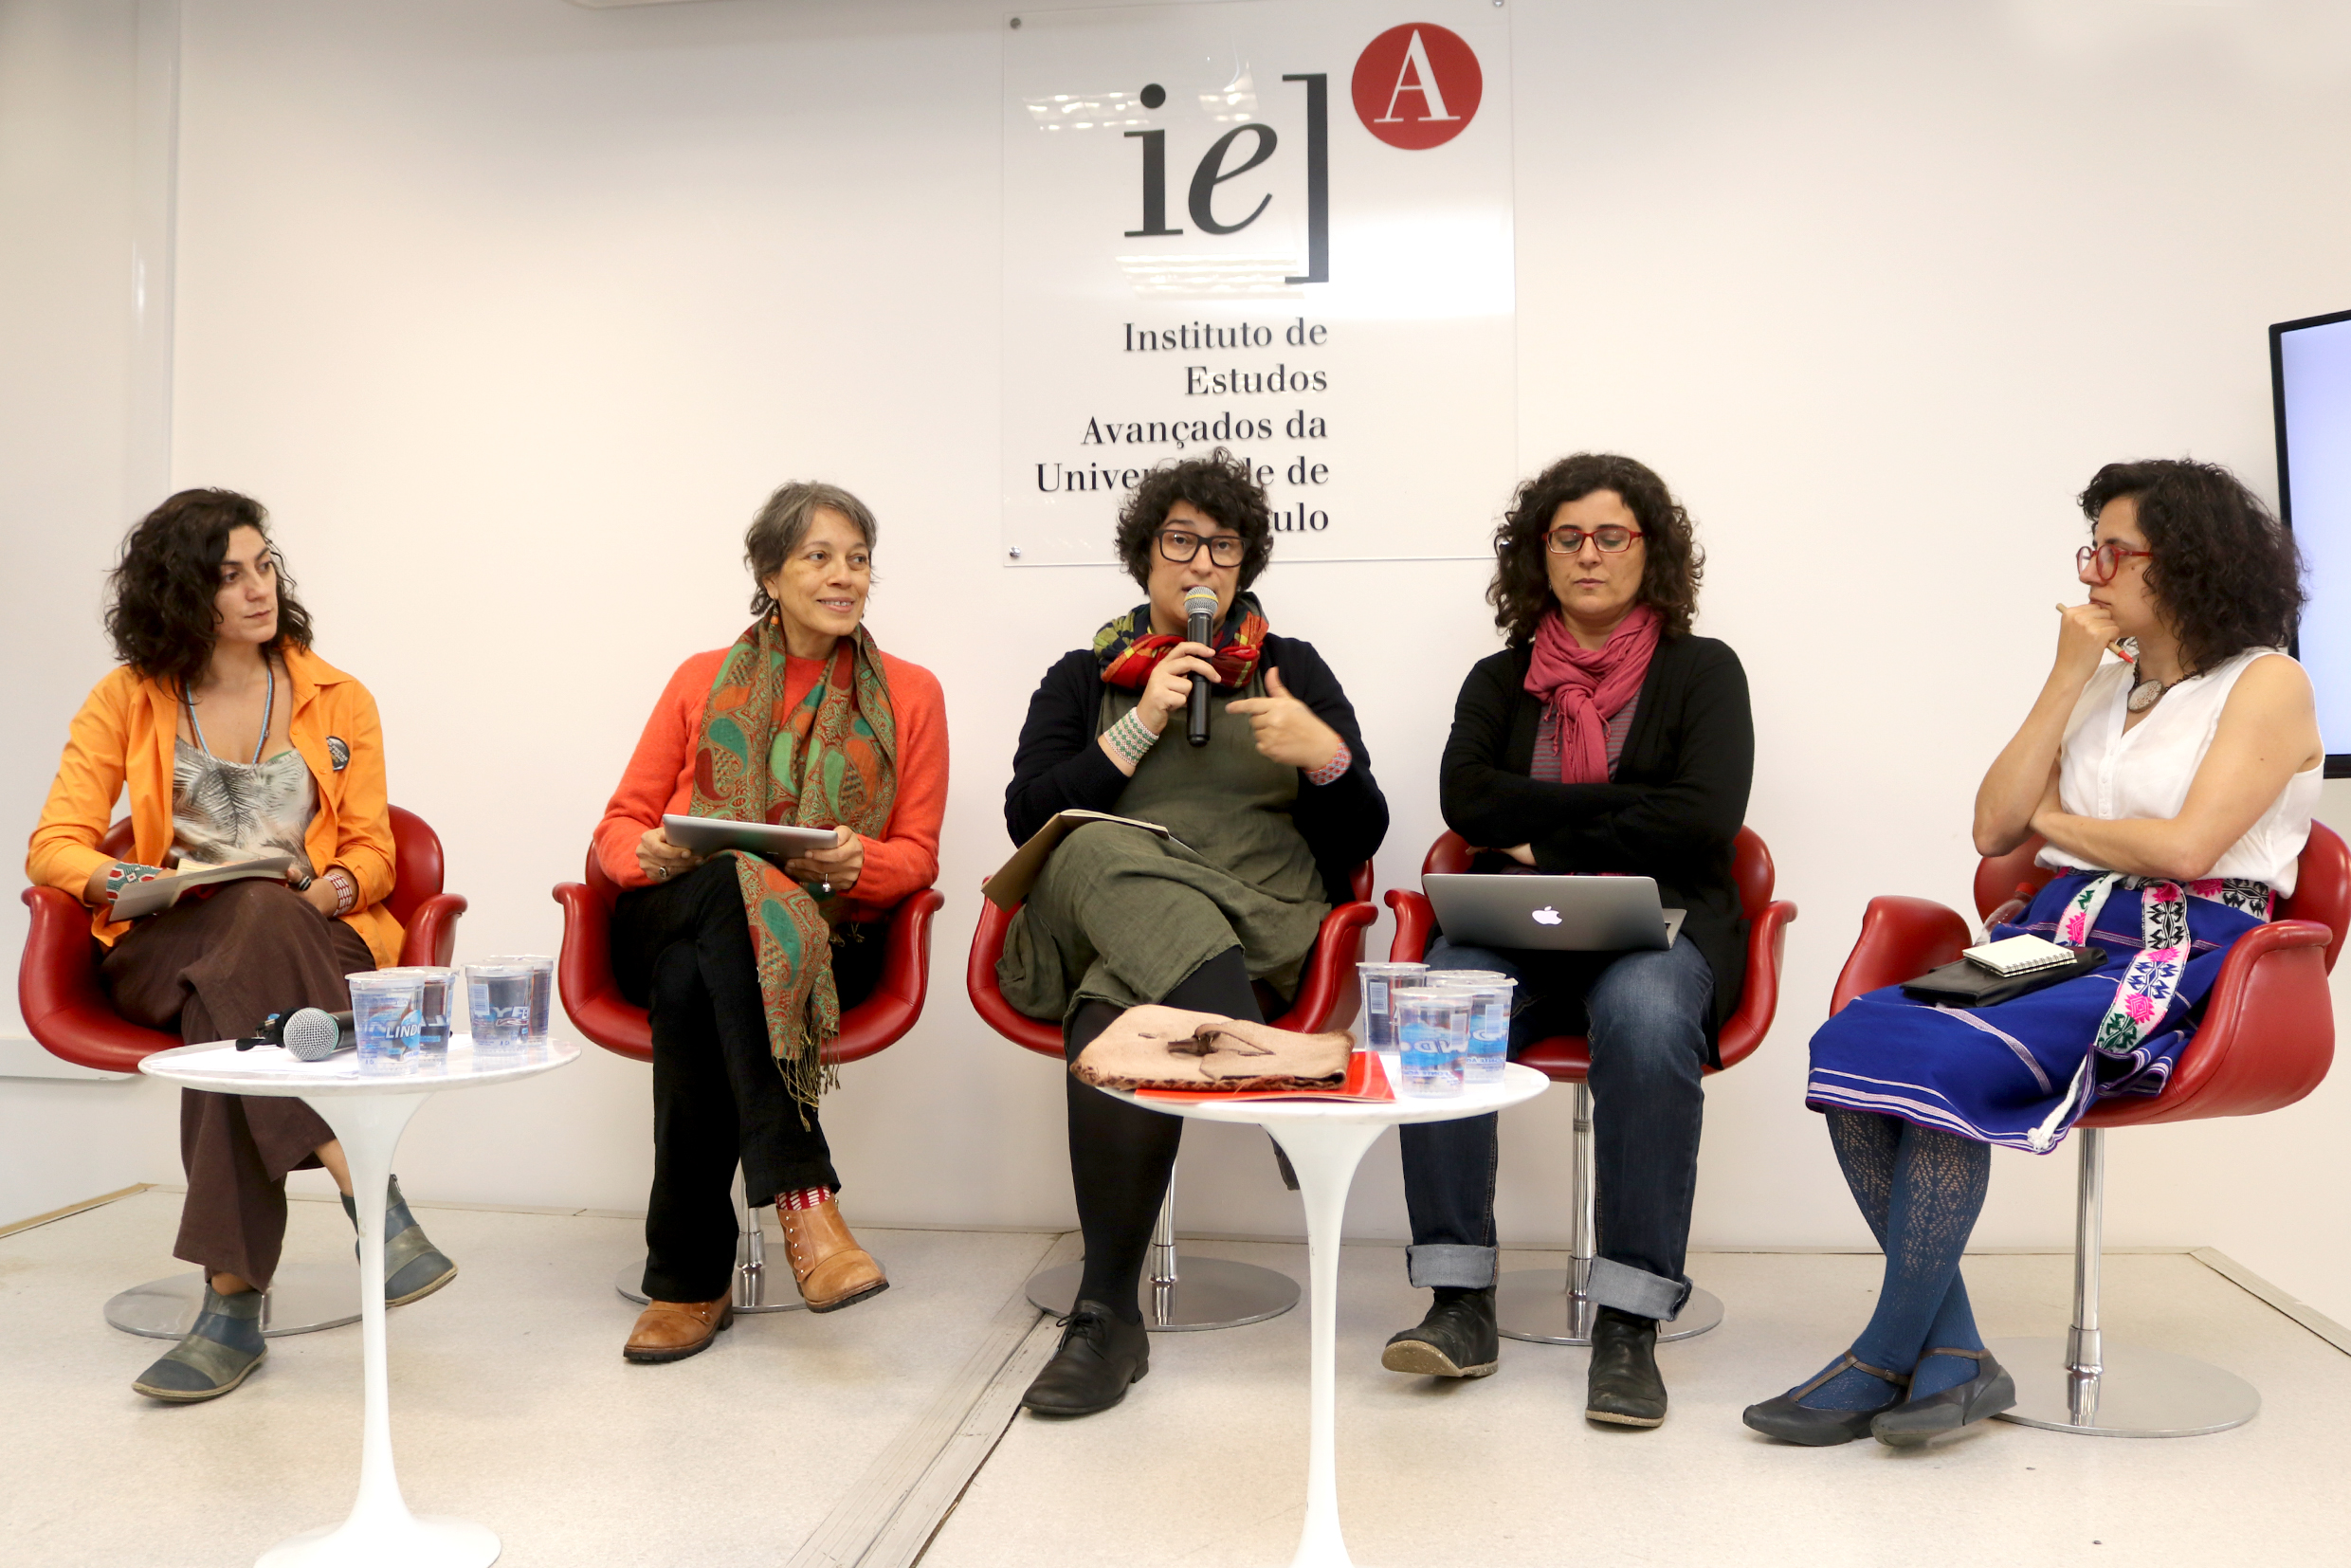 Iazana Guizzo, Silvana Rubino, Zoy Anastassakis, Joana Mello e Tania Pérez-Bustos - 15/08/2018 